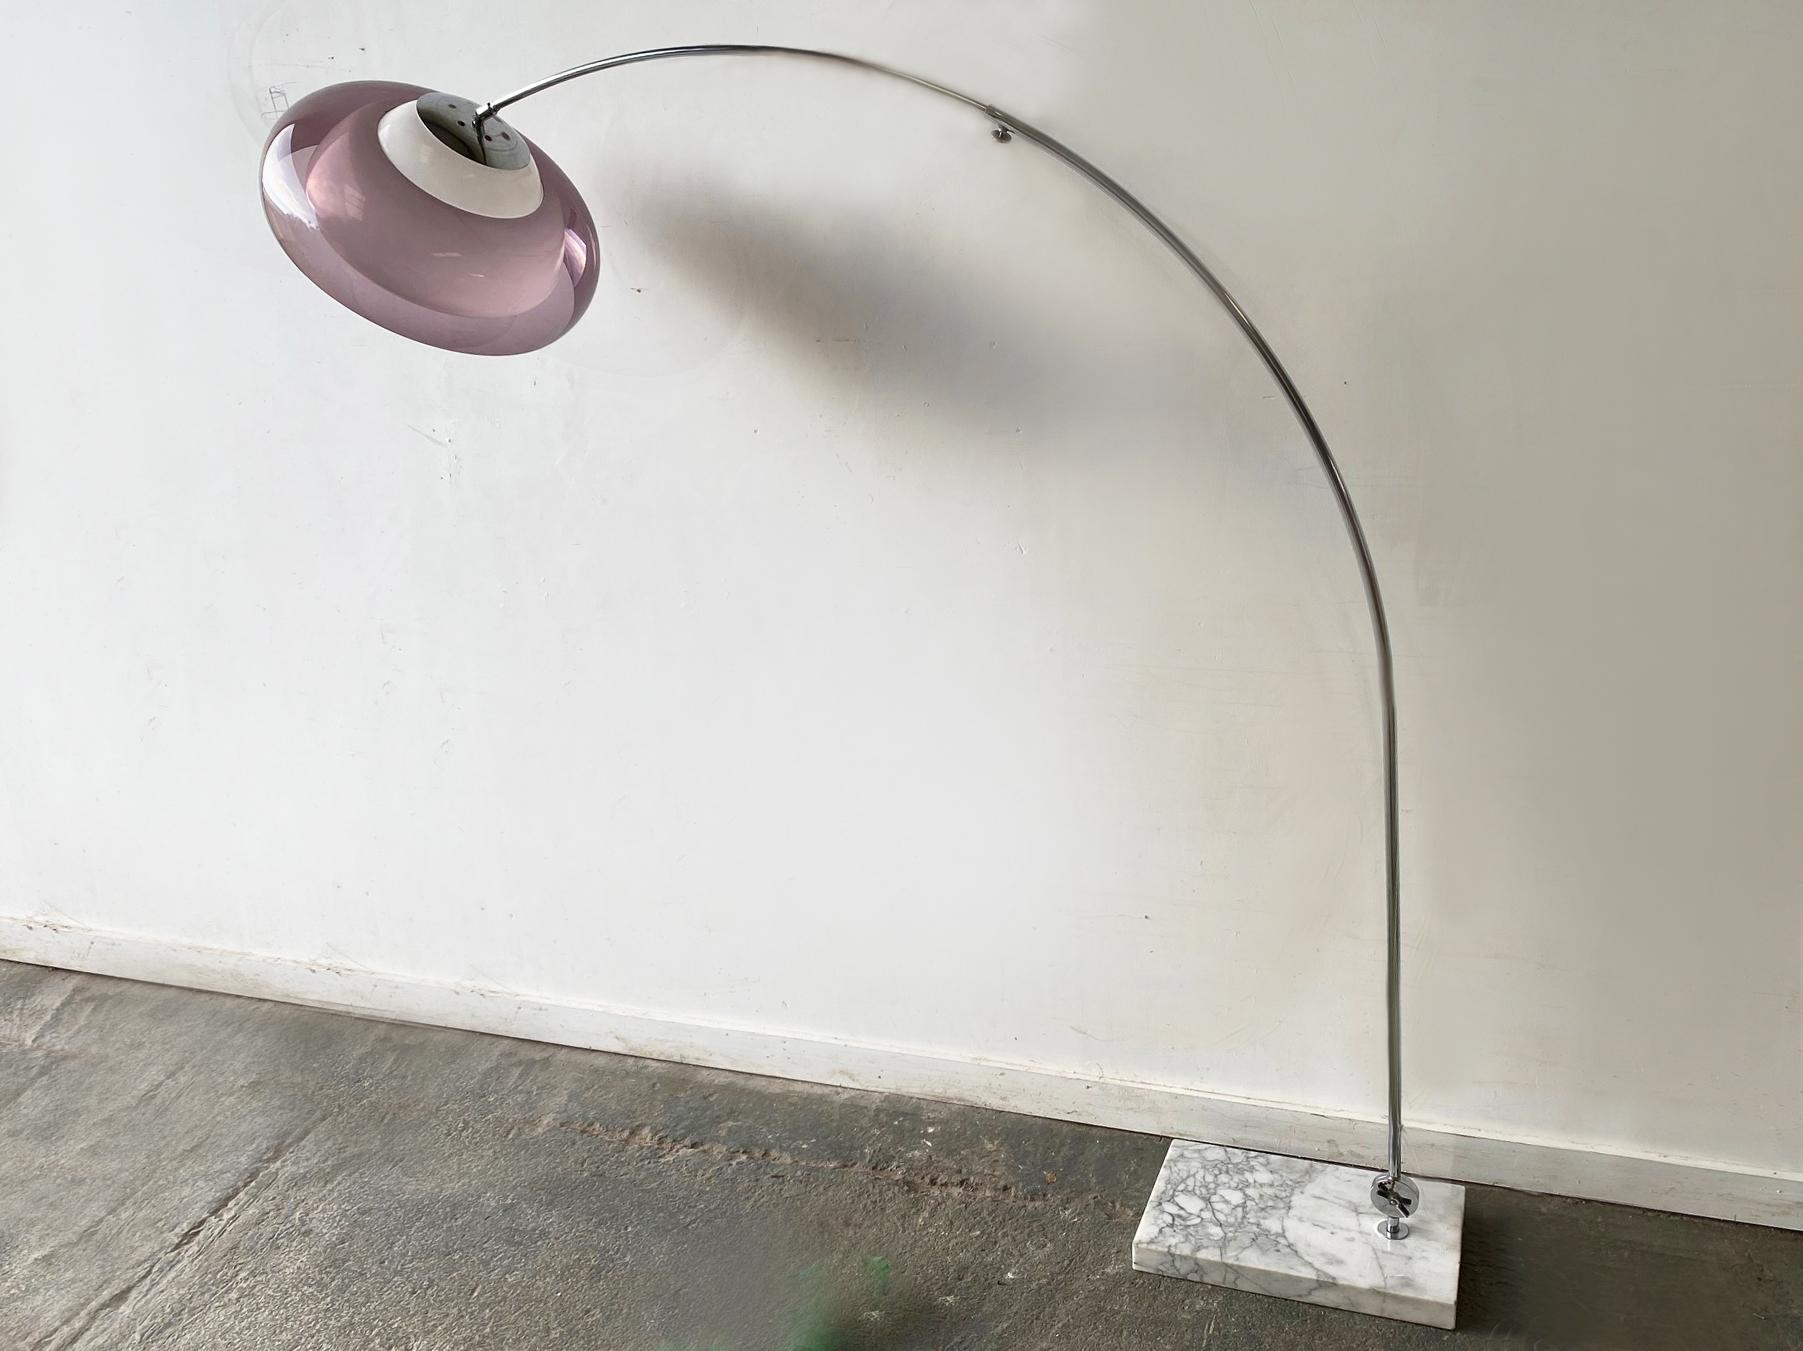 Lampadaire arqué moderne du milieu du siècle, fabriqué en Italie dans les années 1960. Tête de lampe à double ombre avec un dôme en plexiglas blanc et un dôme en plexiglas lilas. Arc très élancé en acier chromé, reposant sur un solide et lourd socle